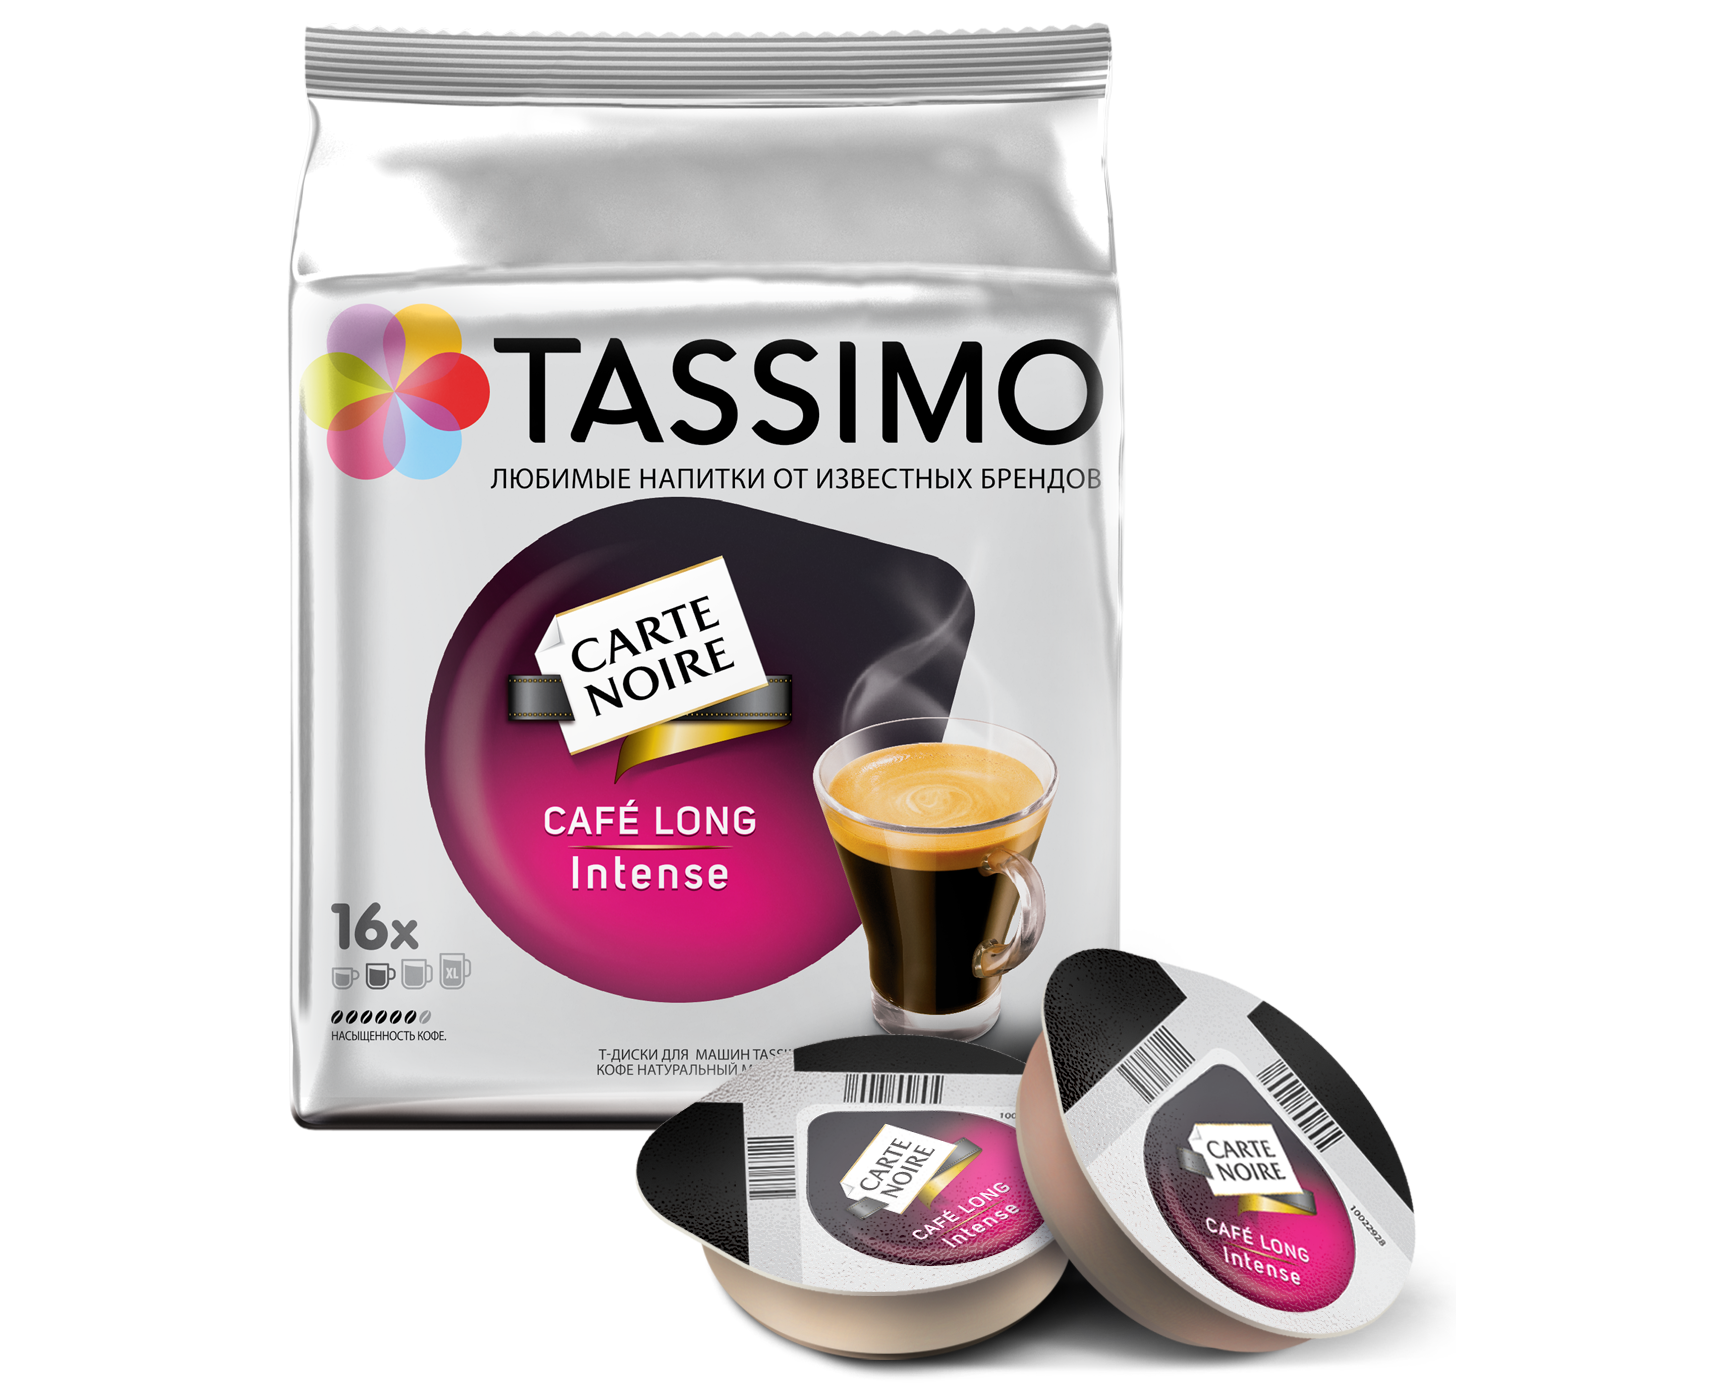 Кофе для кофемашины недорогой. Капсулы для кофемашины бош Тассимо. Капсулы кофе Tassimo carte noire. Капсулы для кофемашины бош Тассимо карт Нуар. Капсулы Якобс для кофемашины Тассимо.